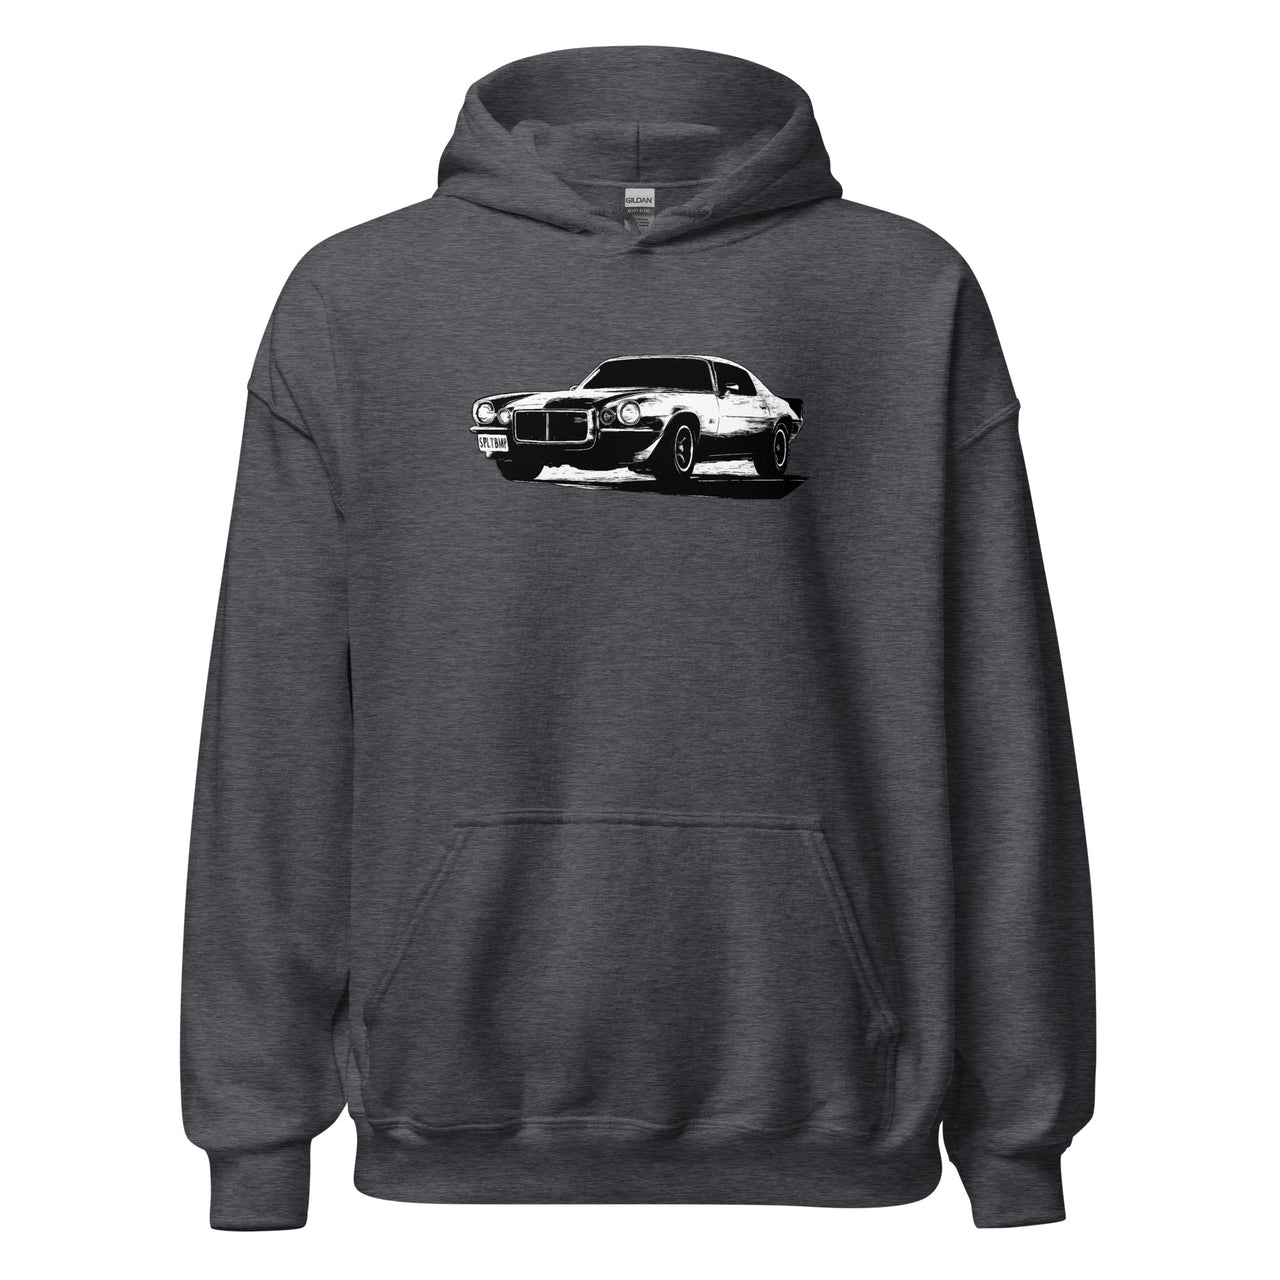 73 camaro hoodie in grey